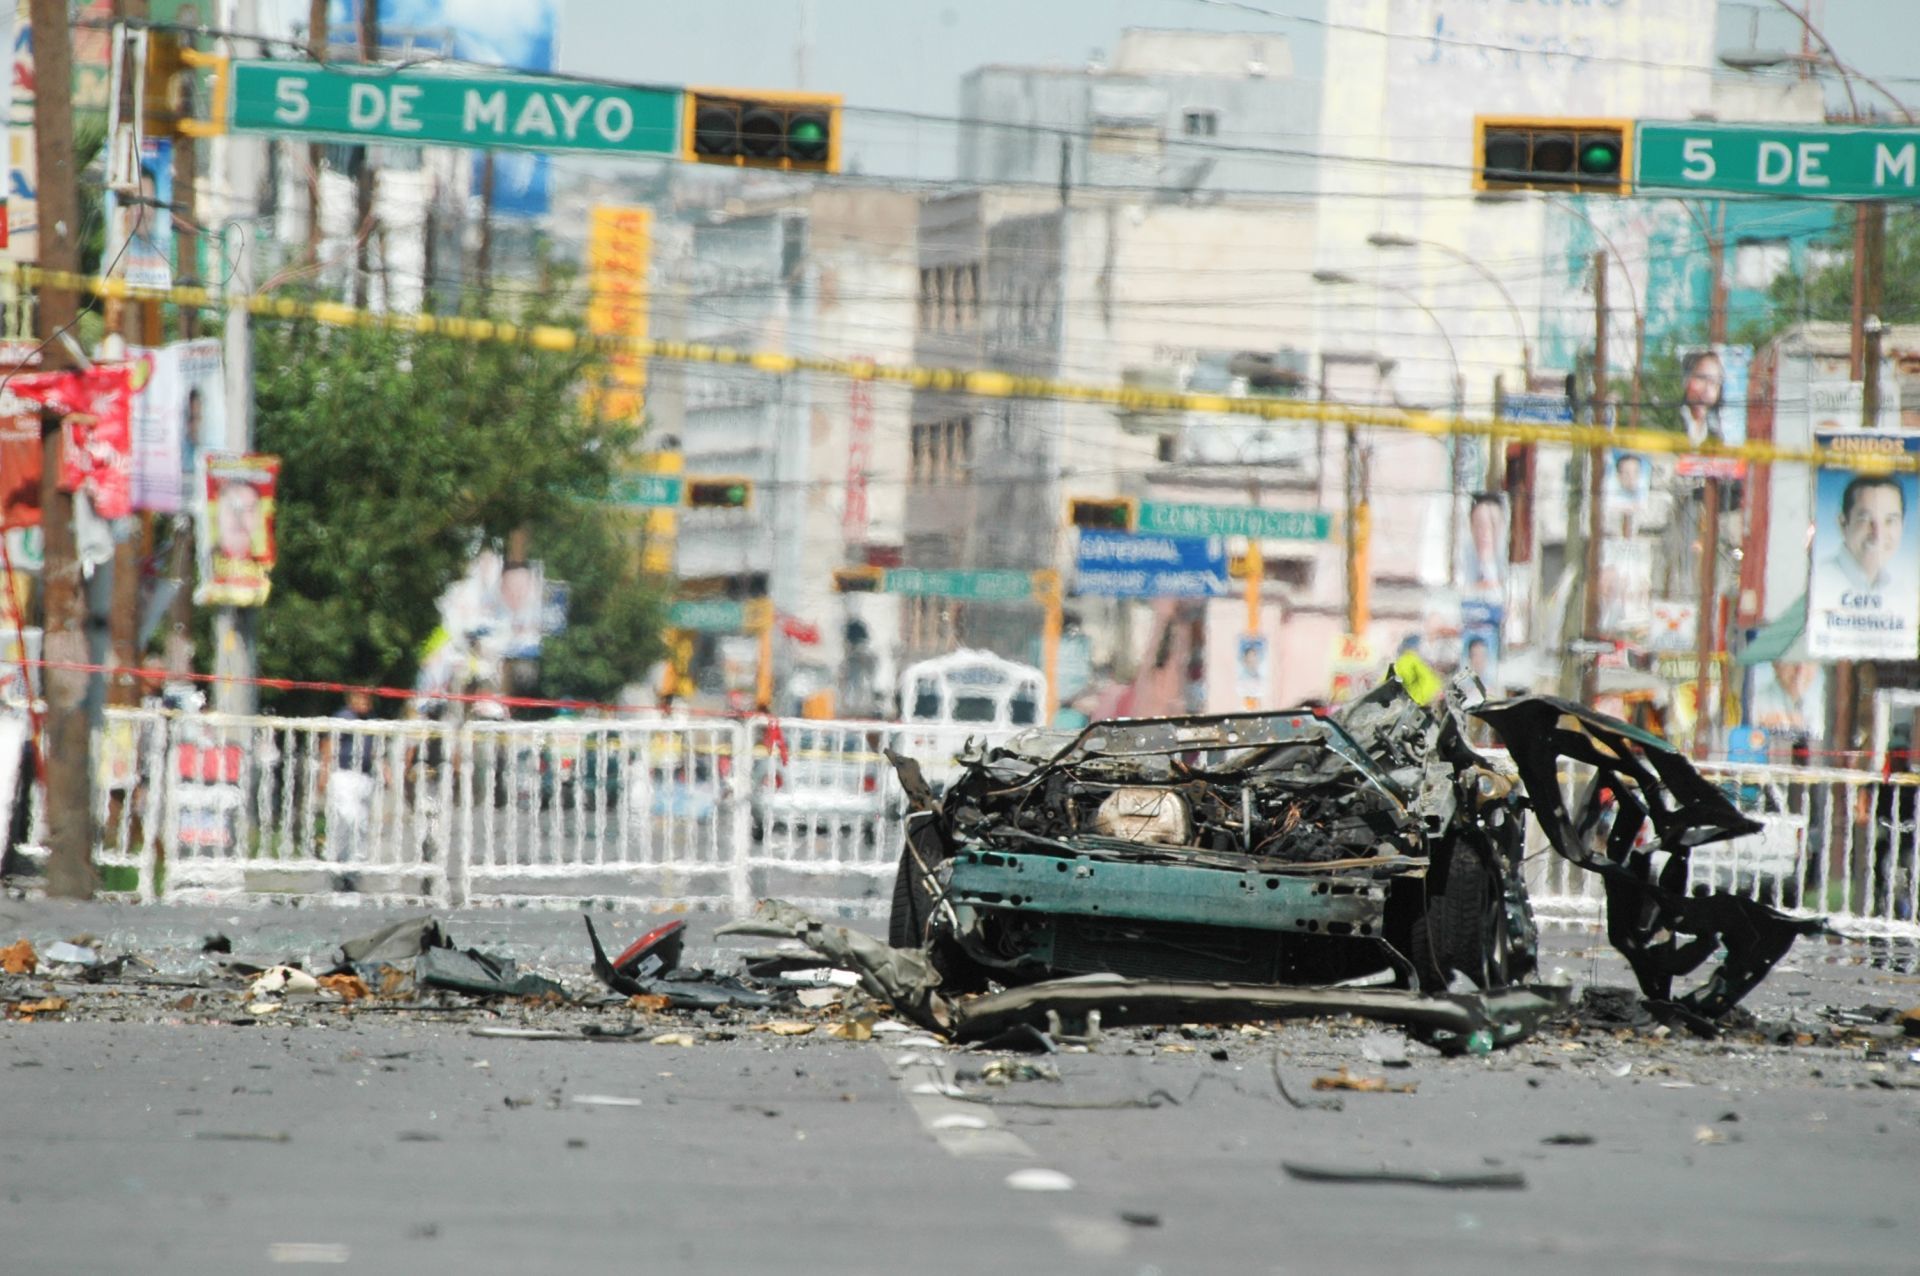 The attack with a car bomb by La Línea was a violent event that occurred in Ciudad Juárez (PHOTO: NACHO RUIZ/CUARTOSCURO)